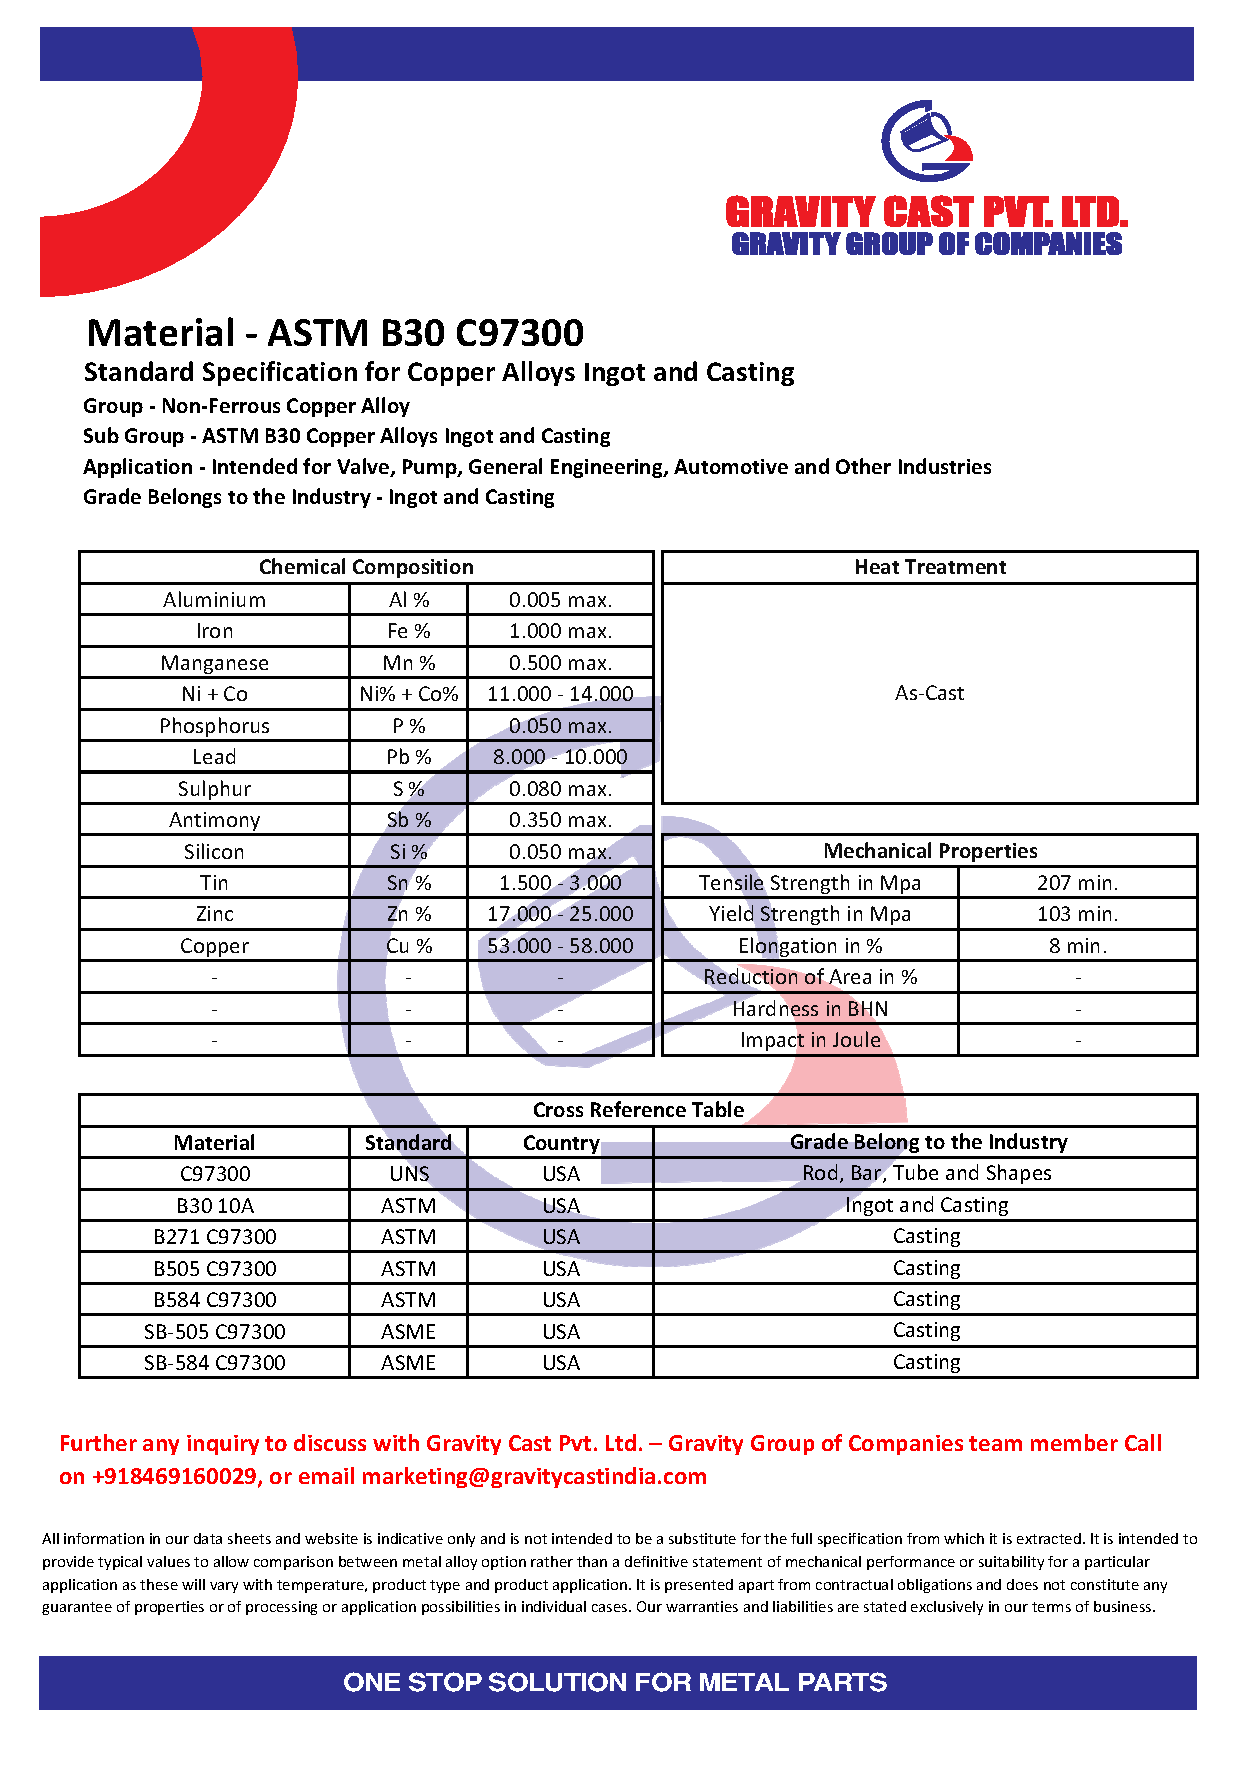 ASTM B30 C97300.pdf